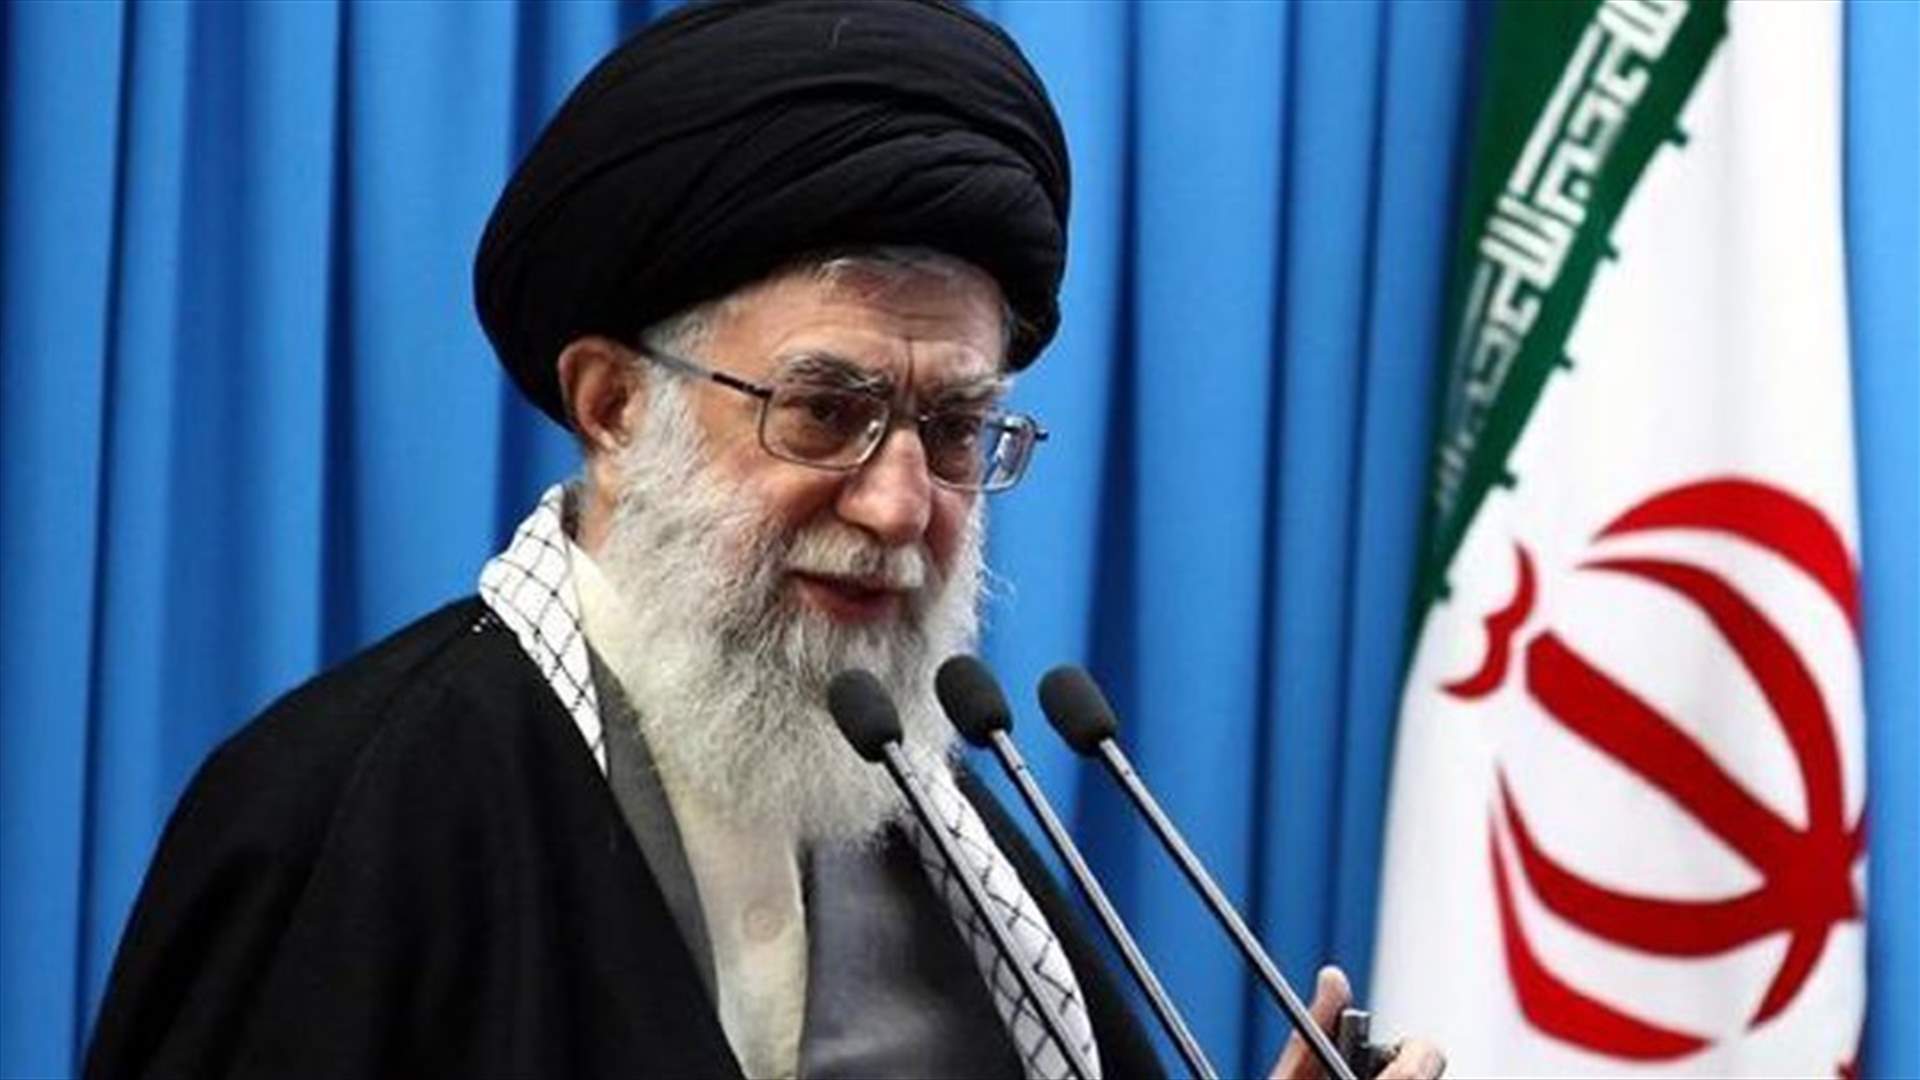 خامنئي: برنامج إيران الصاروخي مهم للدفاع عن البلاد